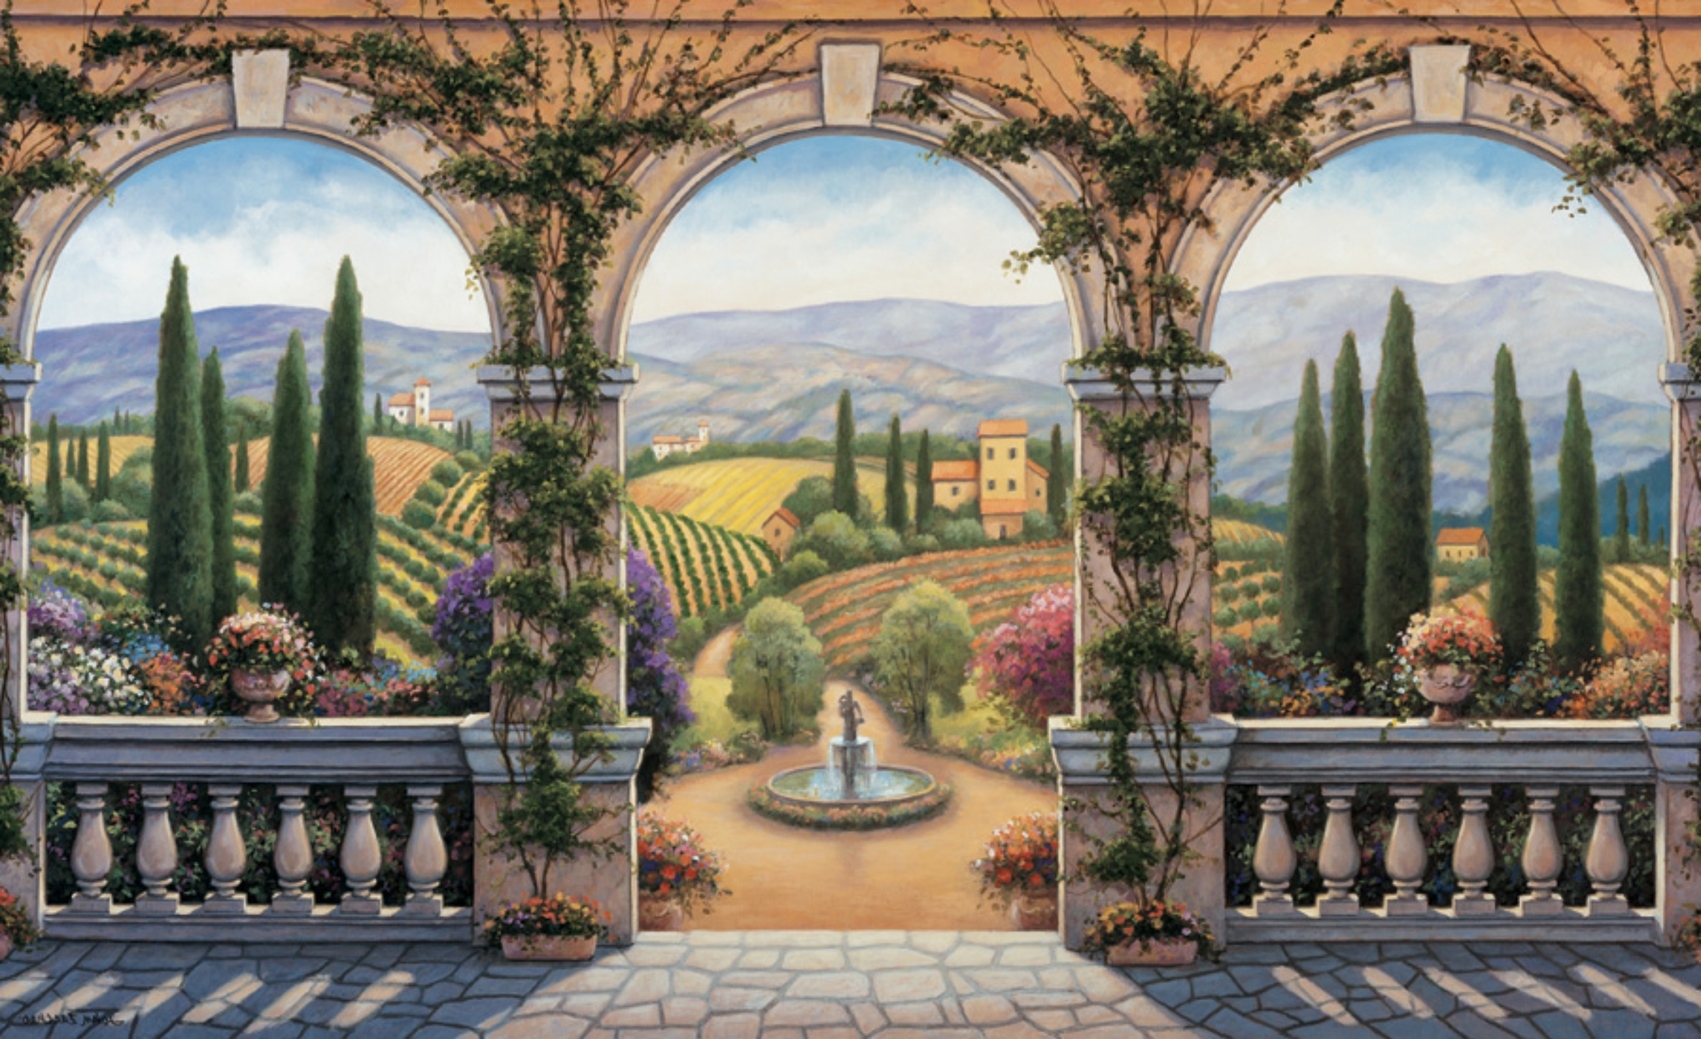 Italian Courtyard Painting Italian Garden Area Pinterest Italian